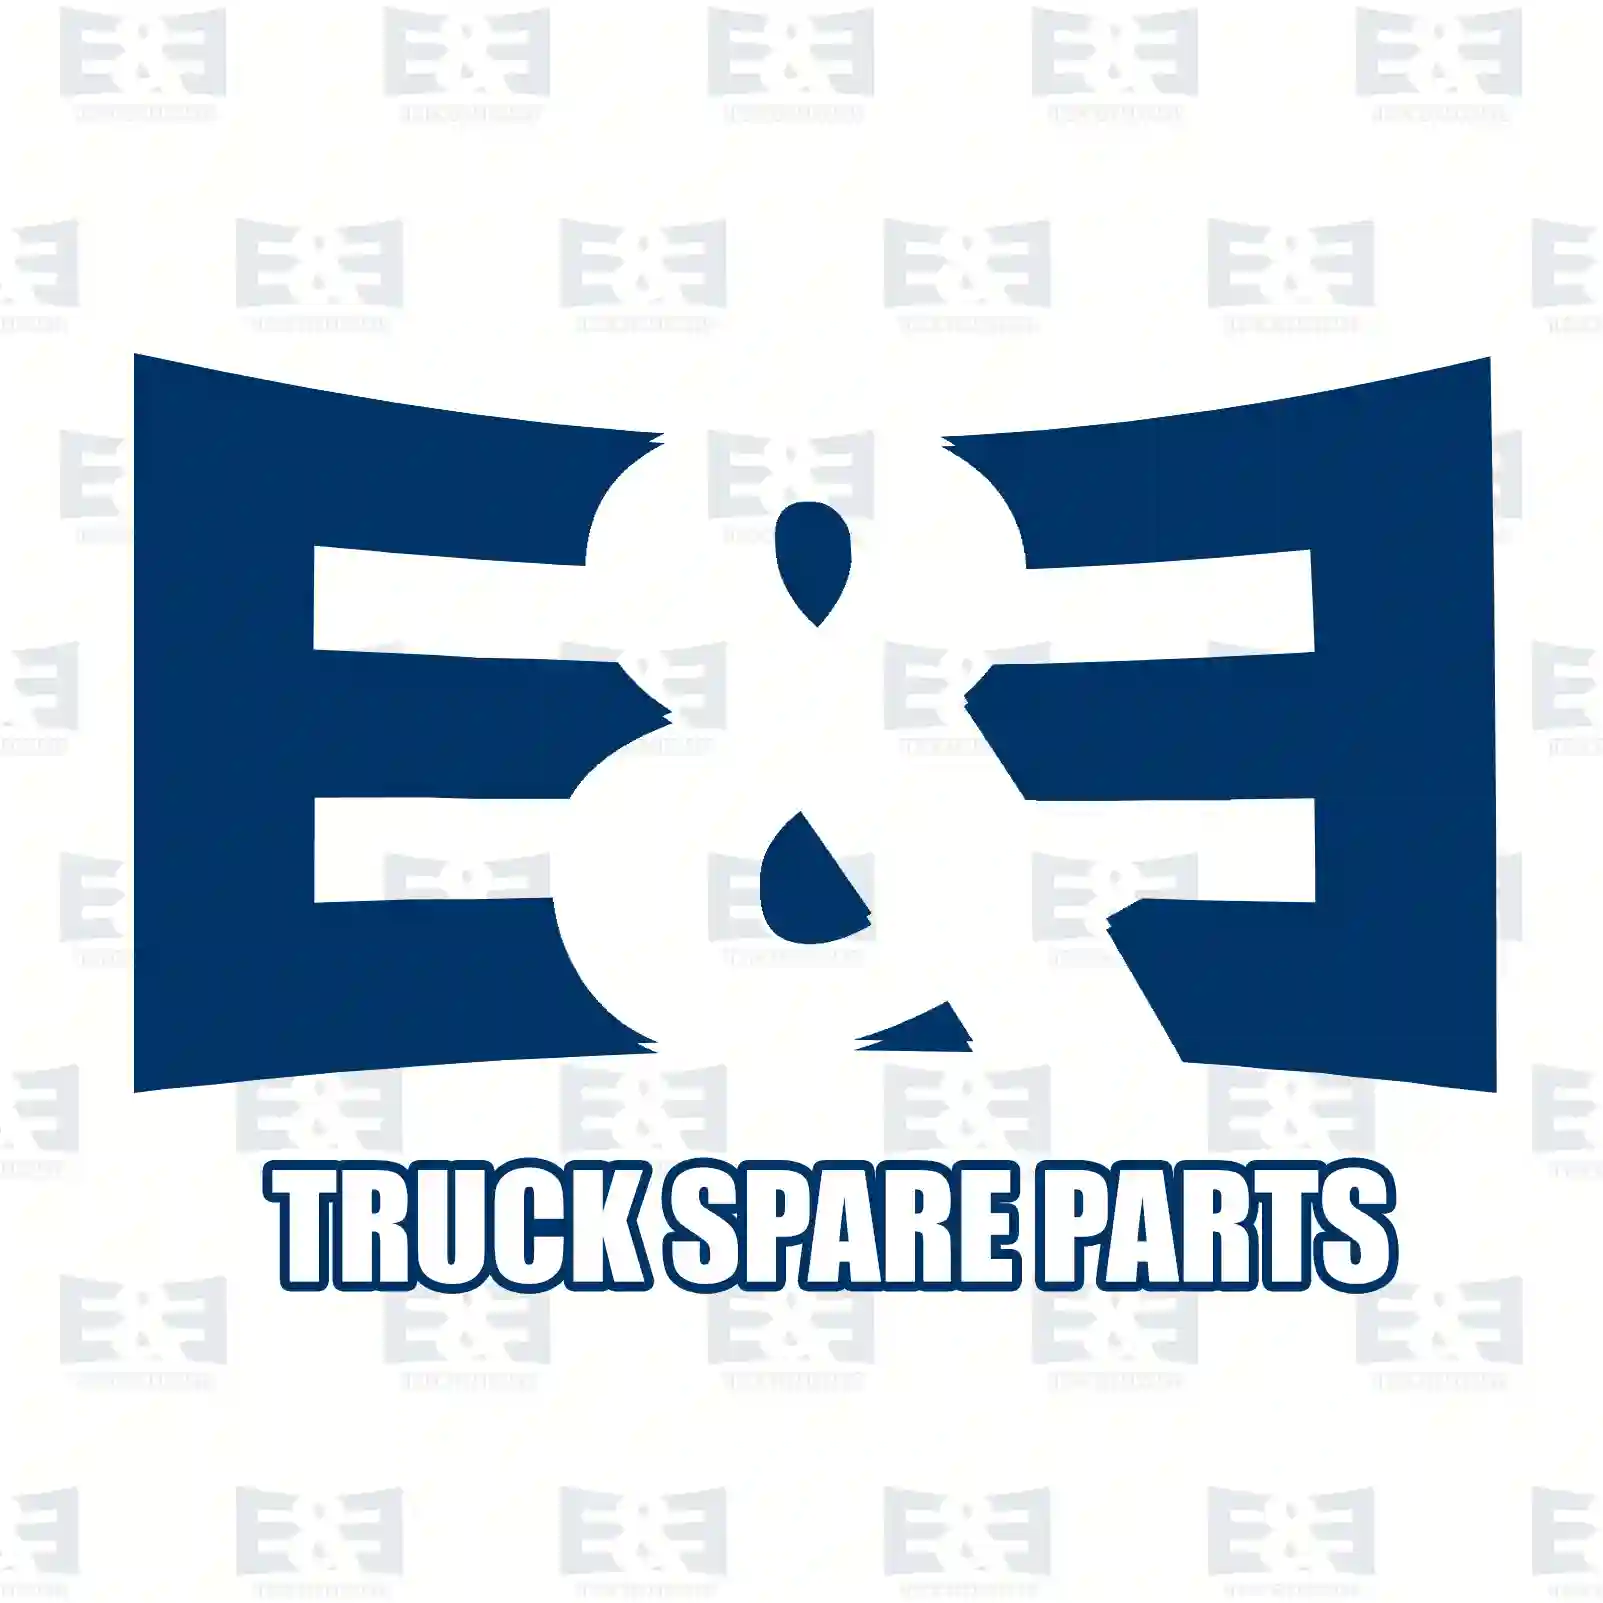  Headlamp, left || E&E Truck Spare Parts | Truck Spare Parts, Auotomotive Spare Parts